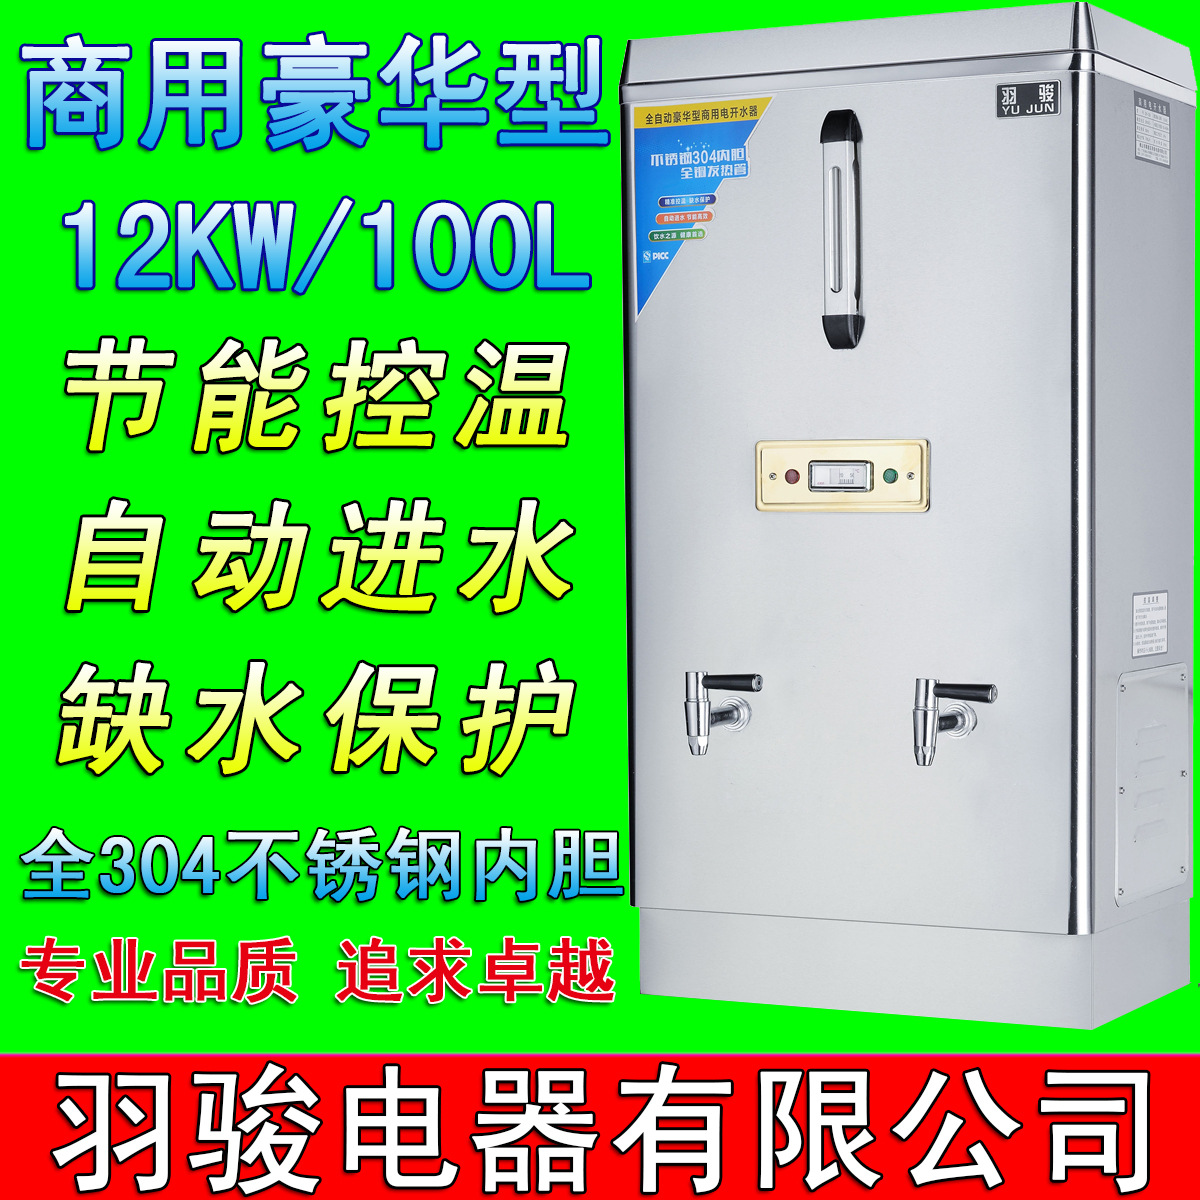 羽骏开水器12KW/100L商用不锈钢全自动开水机/开水桶/烧水器直销